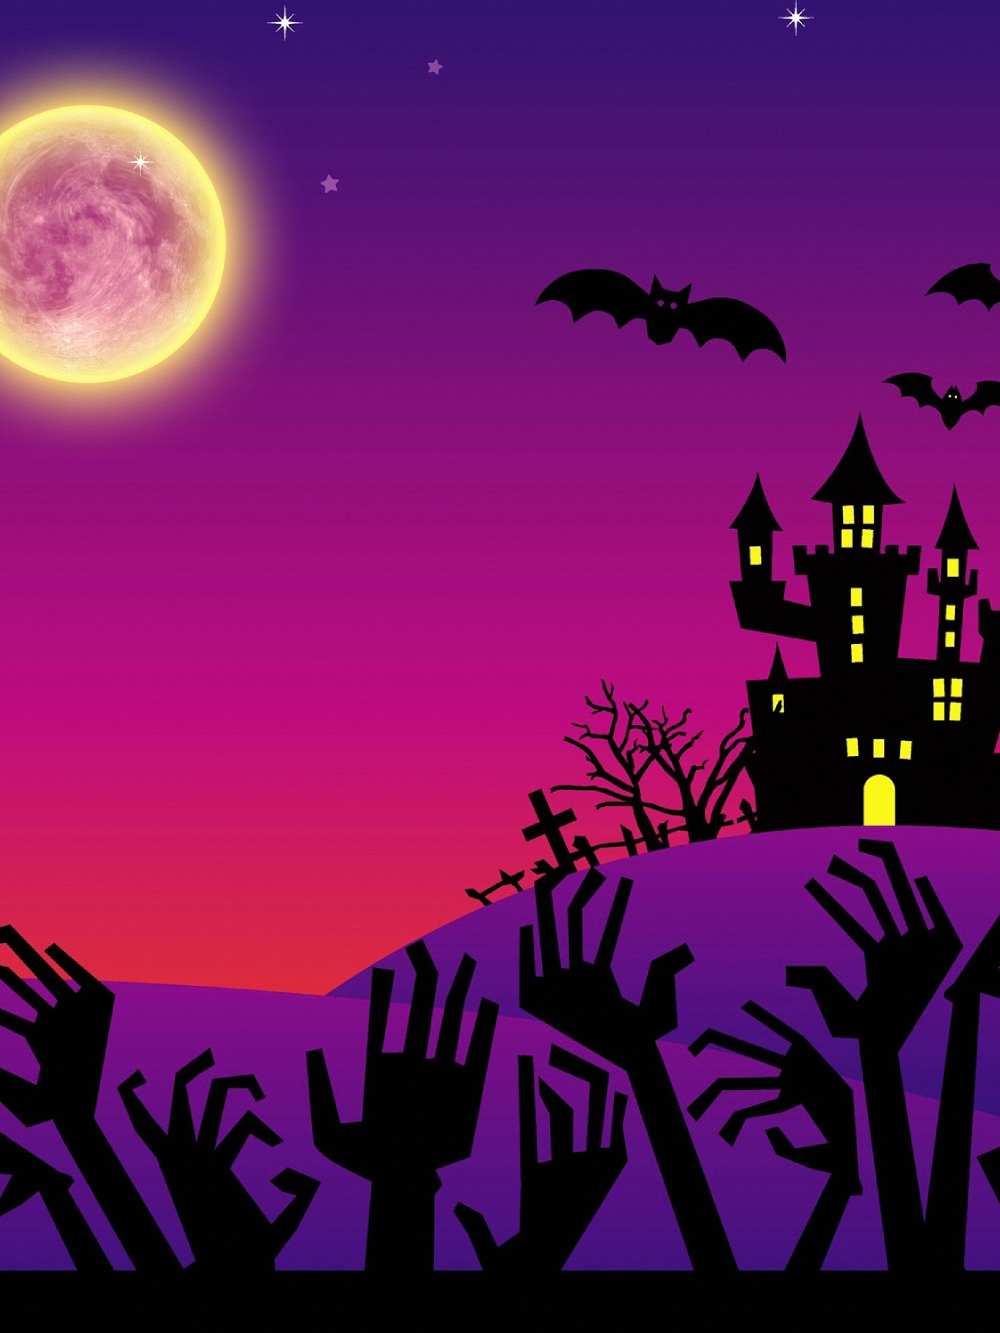 Not Spooky Halloween Castle Shadow Full Moon Backdrop IBD-246886 size:1.5x2